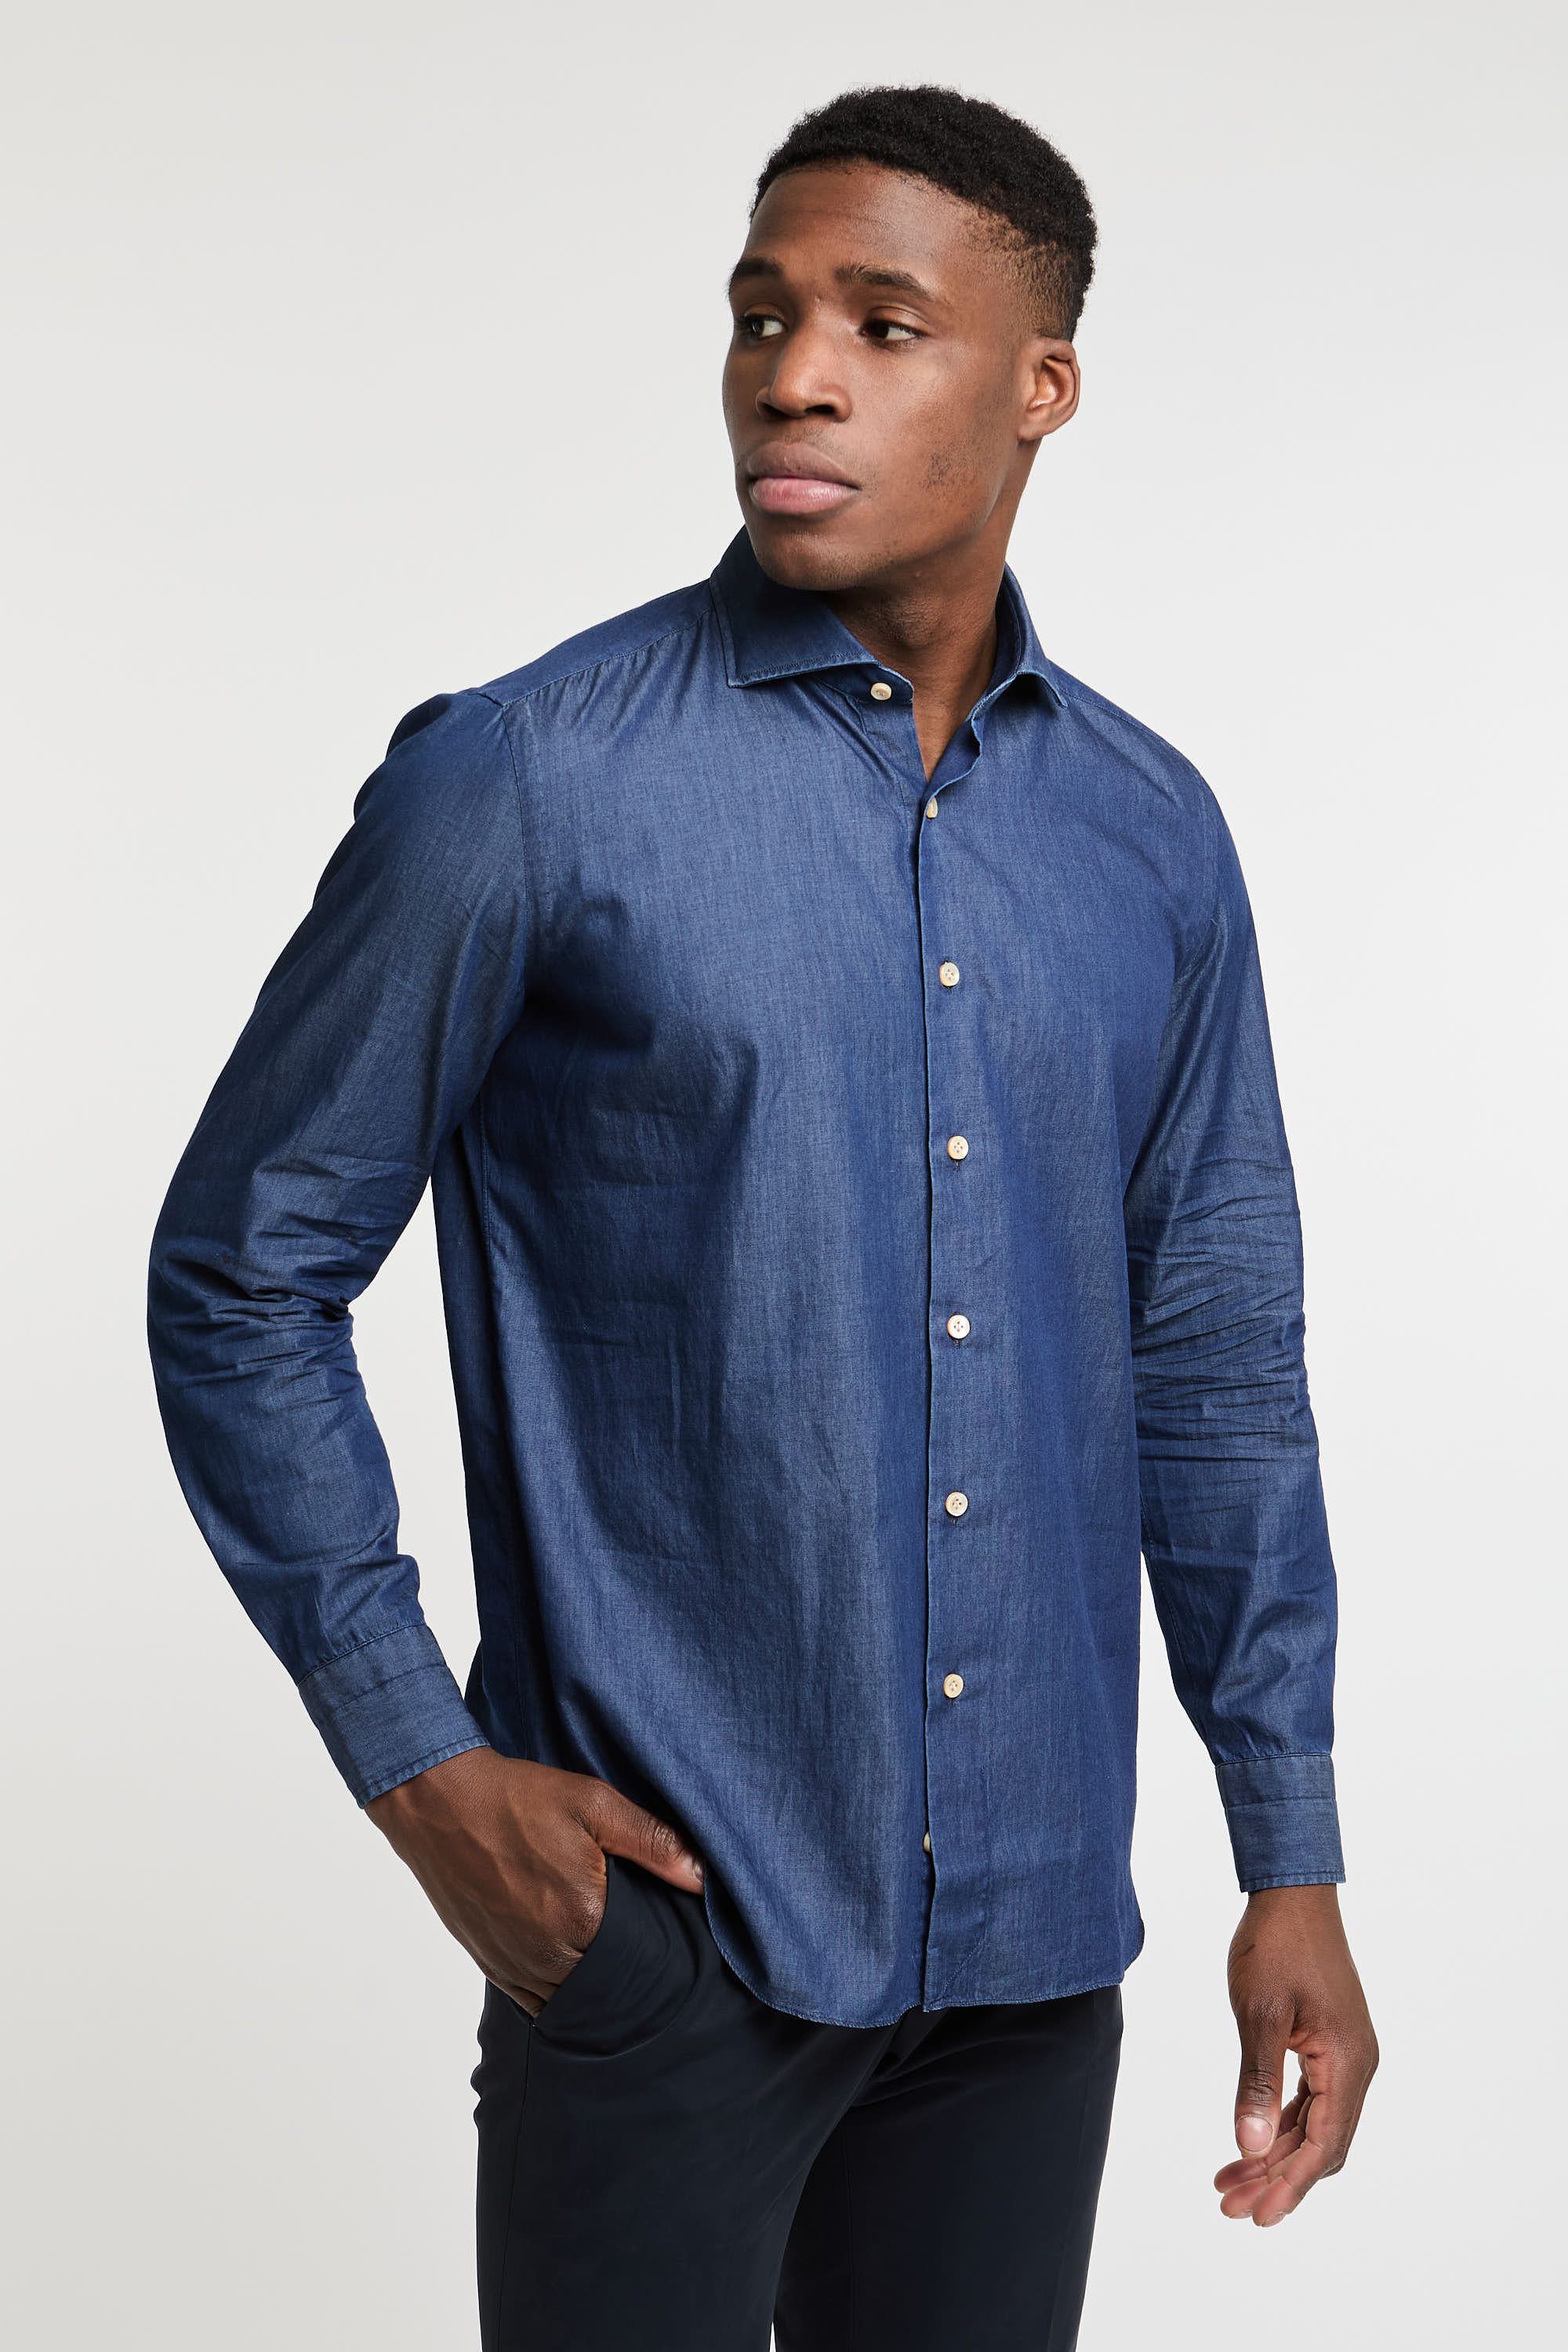 Truzzi Denim Cotton Shirt Dark Blue Color-4